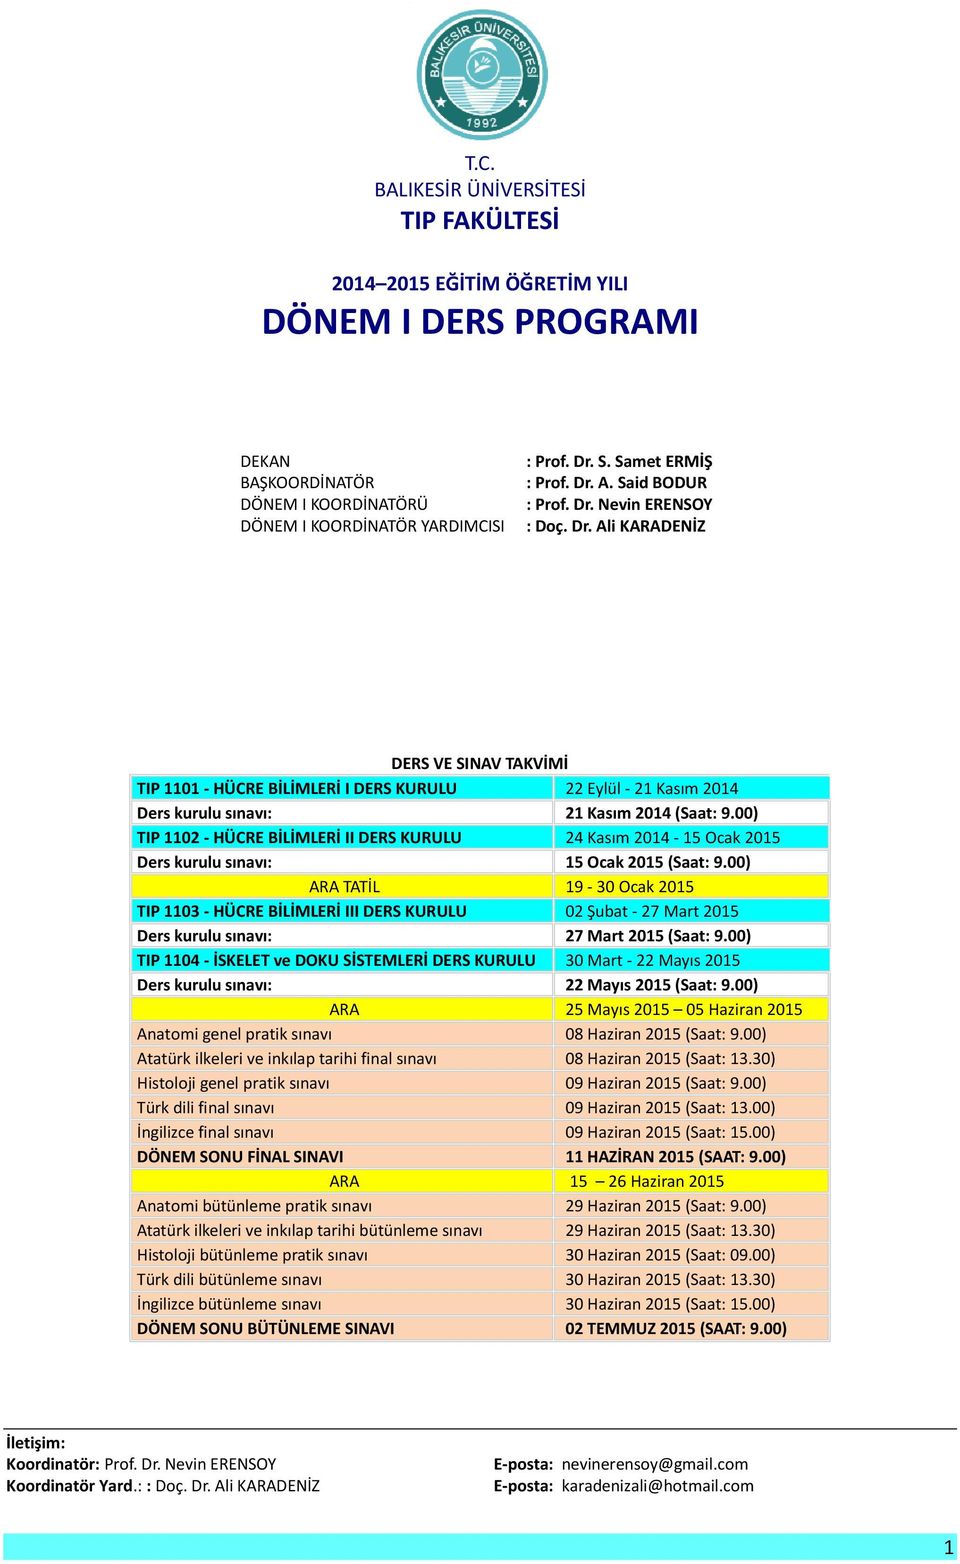 00) TIP 1102 - HÜCRE BİLİMLERİ II DERS KURULU 24 Kasım 2014-15 Ocak 2015 Ders kurulu sınavı: 15 Ocak 2015 (Saat: 9.